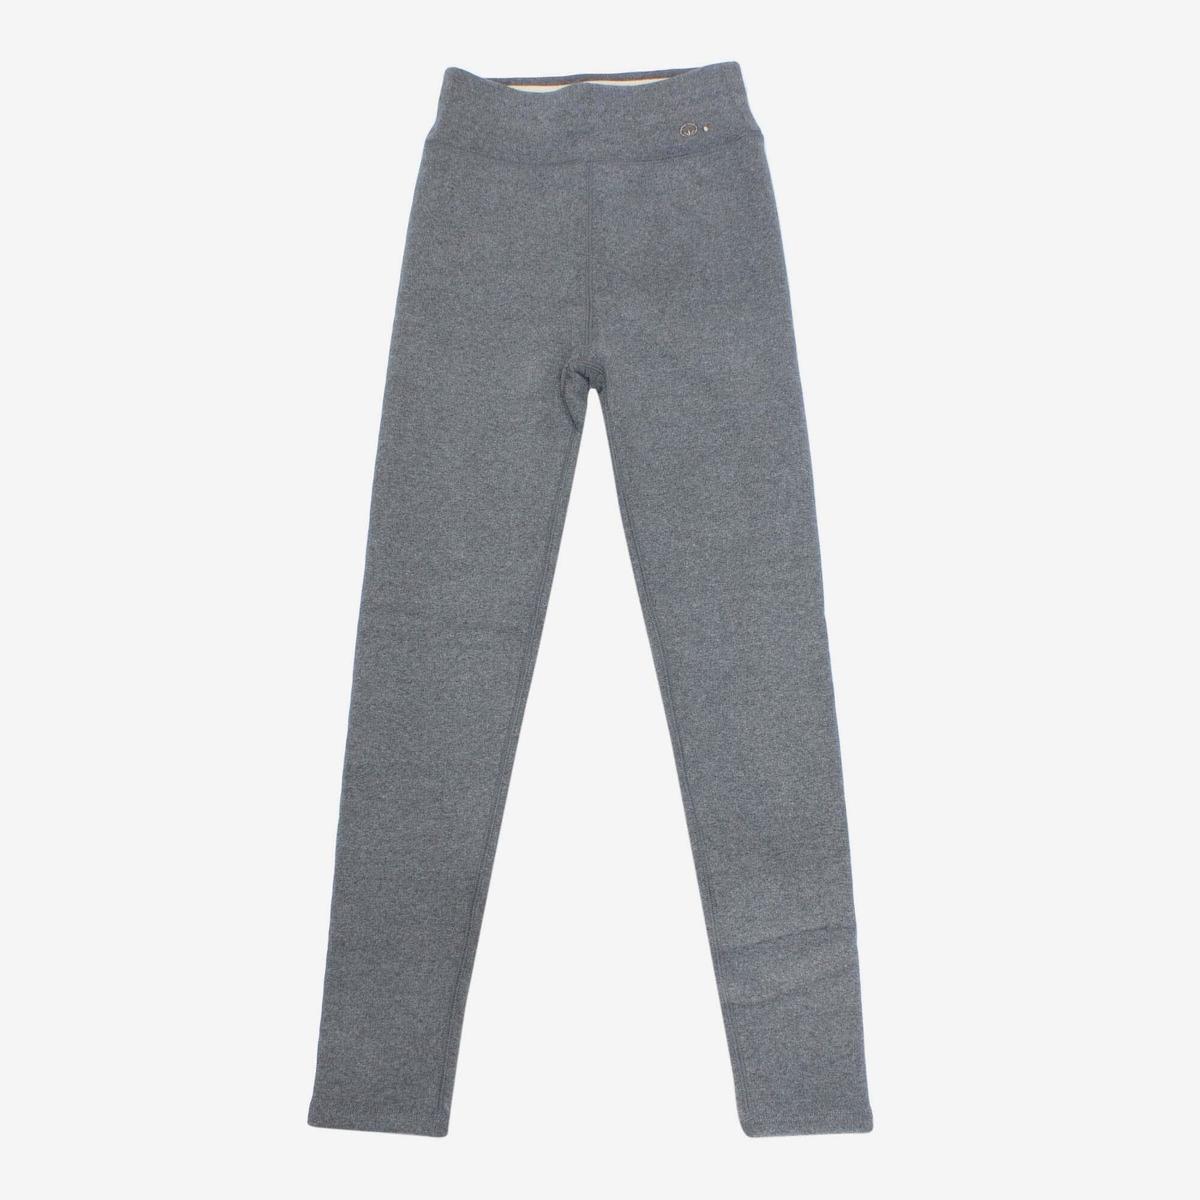 light grey cotton slim fit winter leggings for women